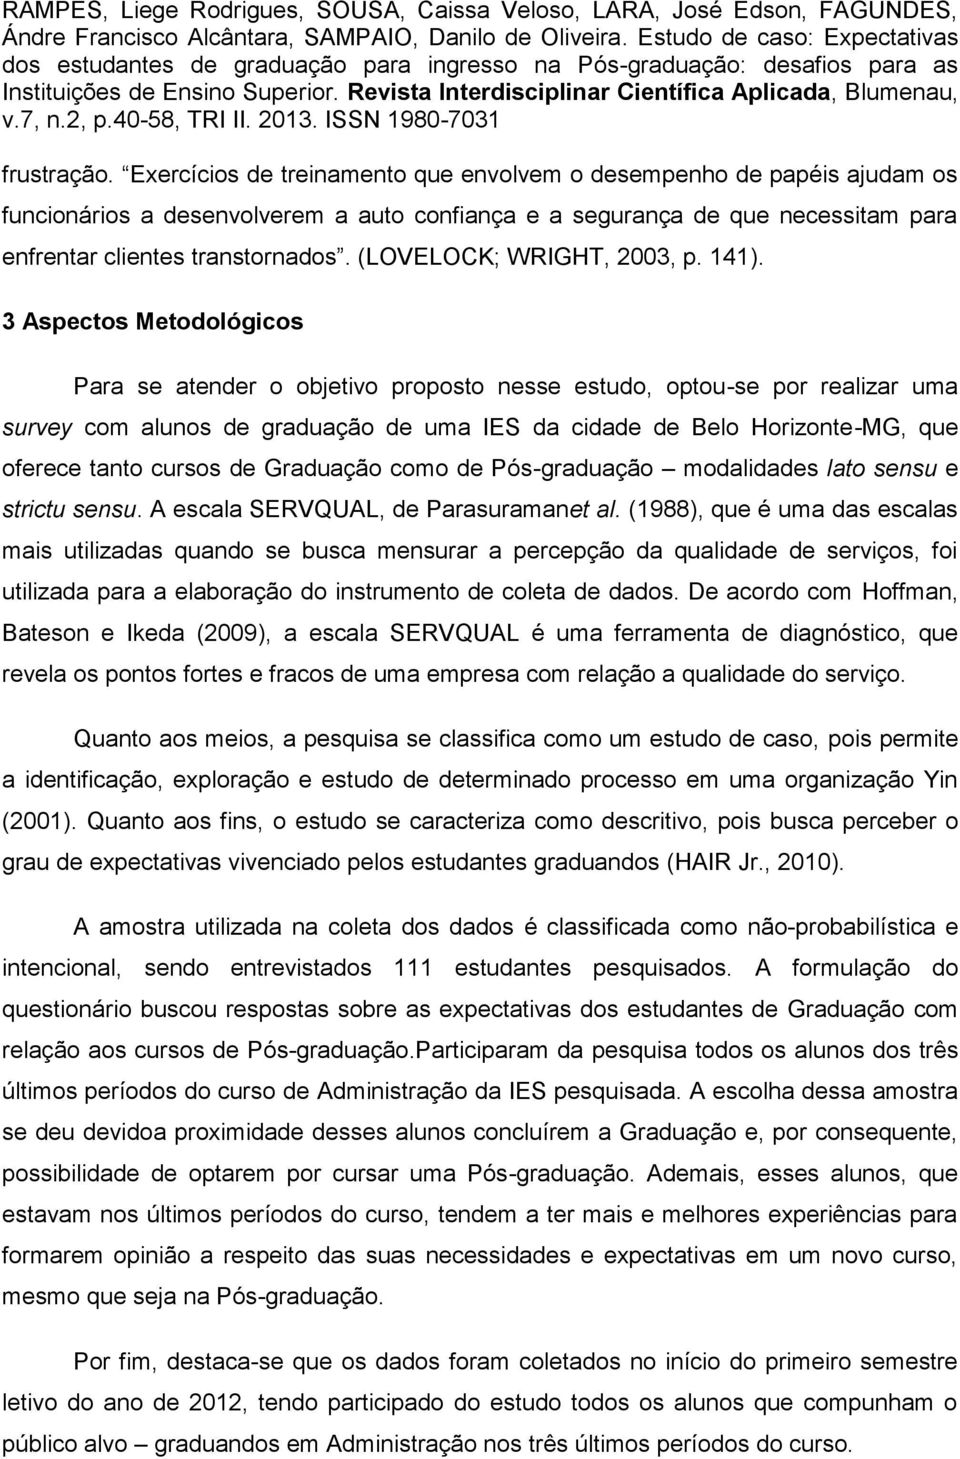 3 Aspectos Metodológicos Para se atender o objetivo proposto nesse estudo, optou-se por realizar uma survey com alunos de graduação de uma IES da cidade de Belo Horizonte-MG, que oferece tanto cursos